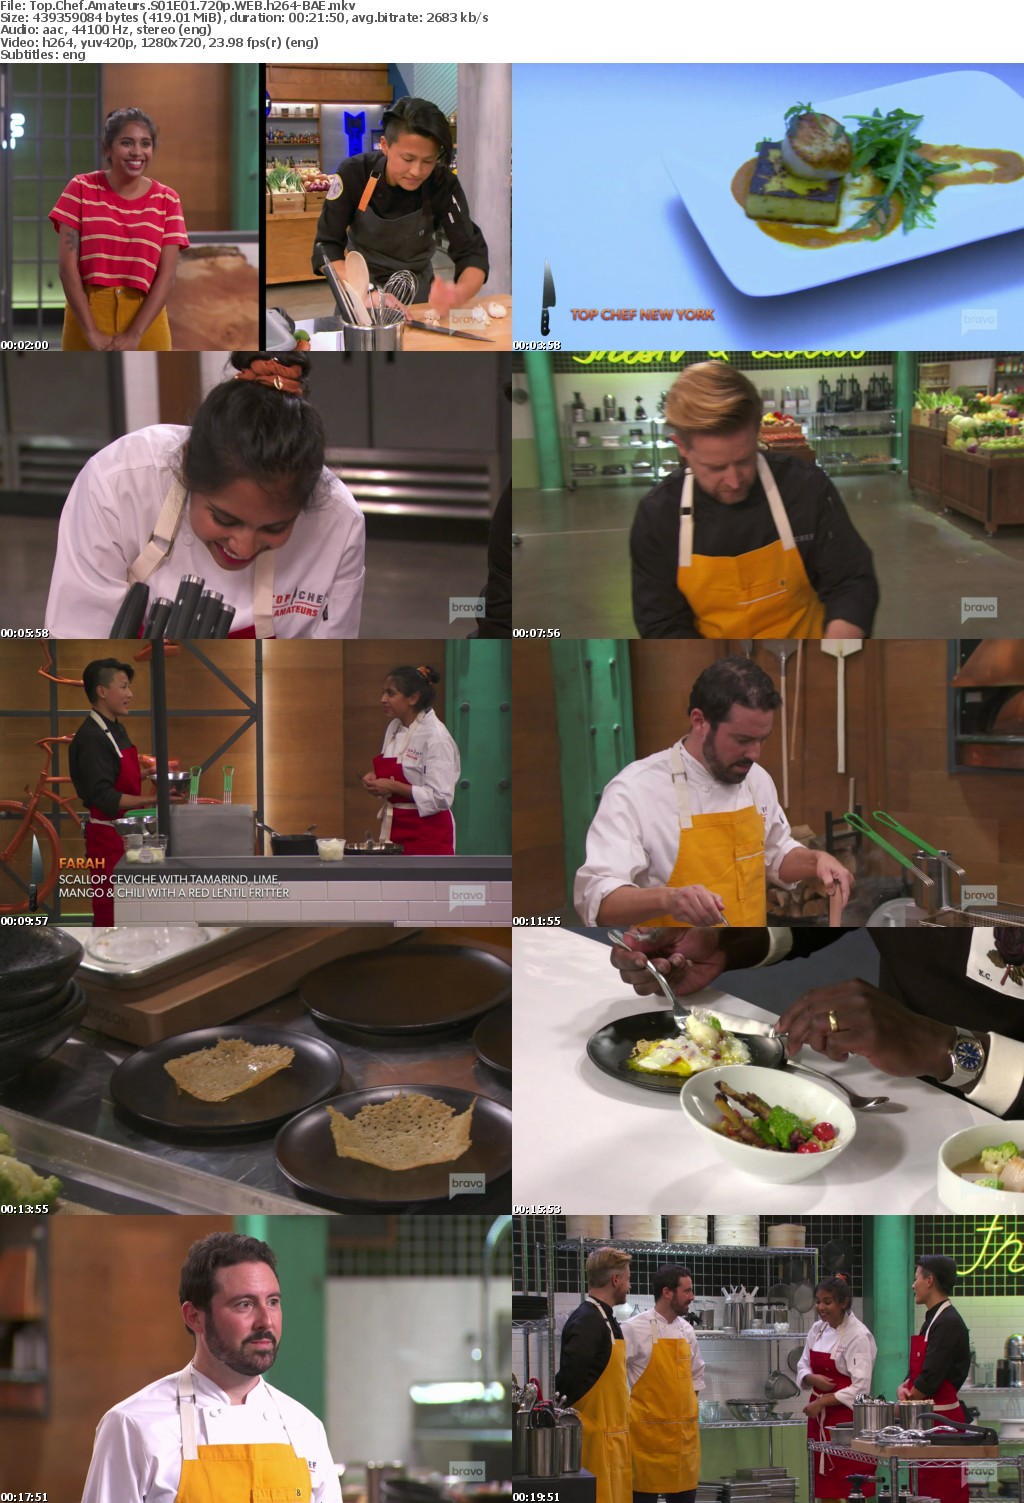 Top Chef Amateurs S01E01 720p WEB h264-BAE